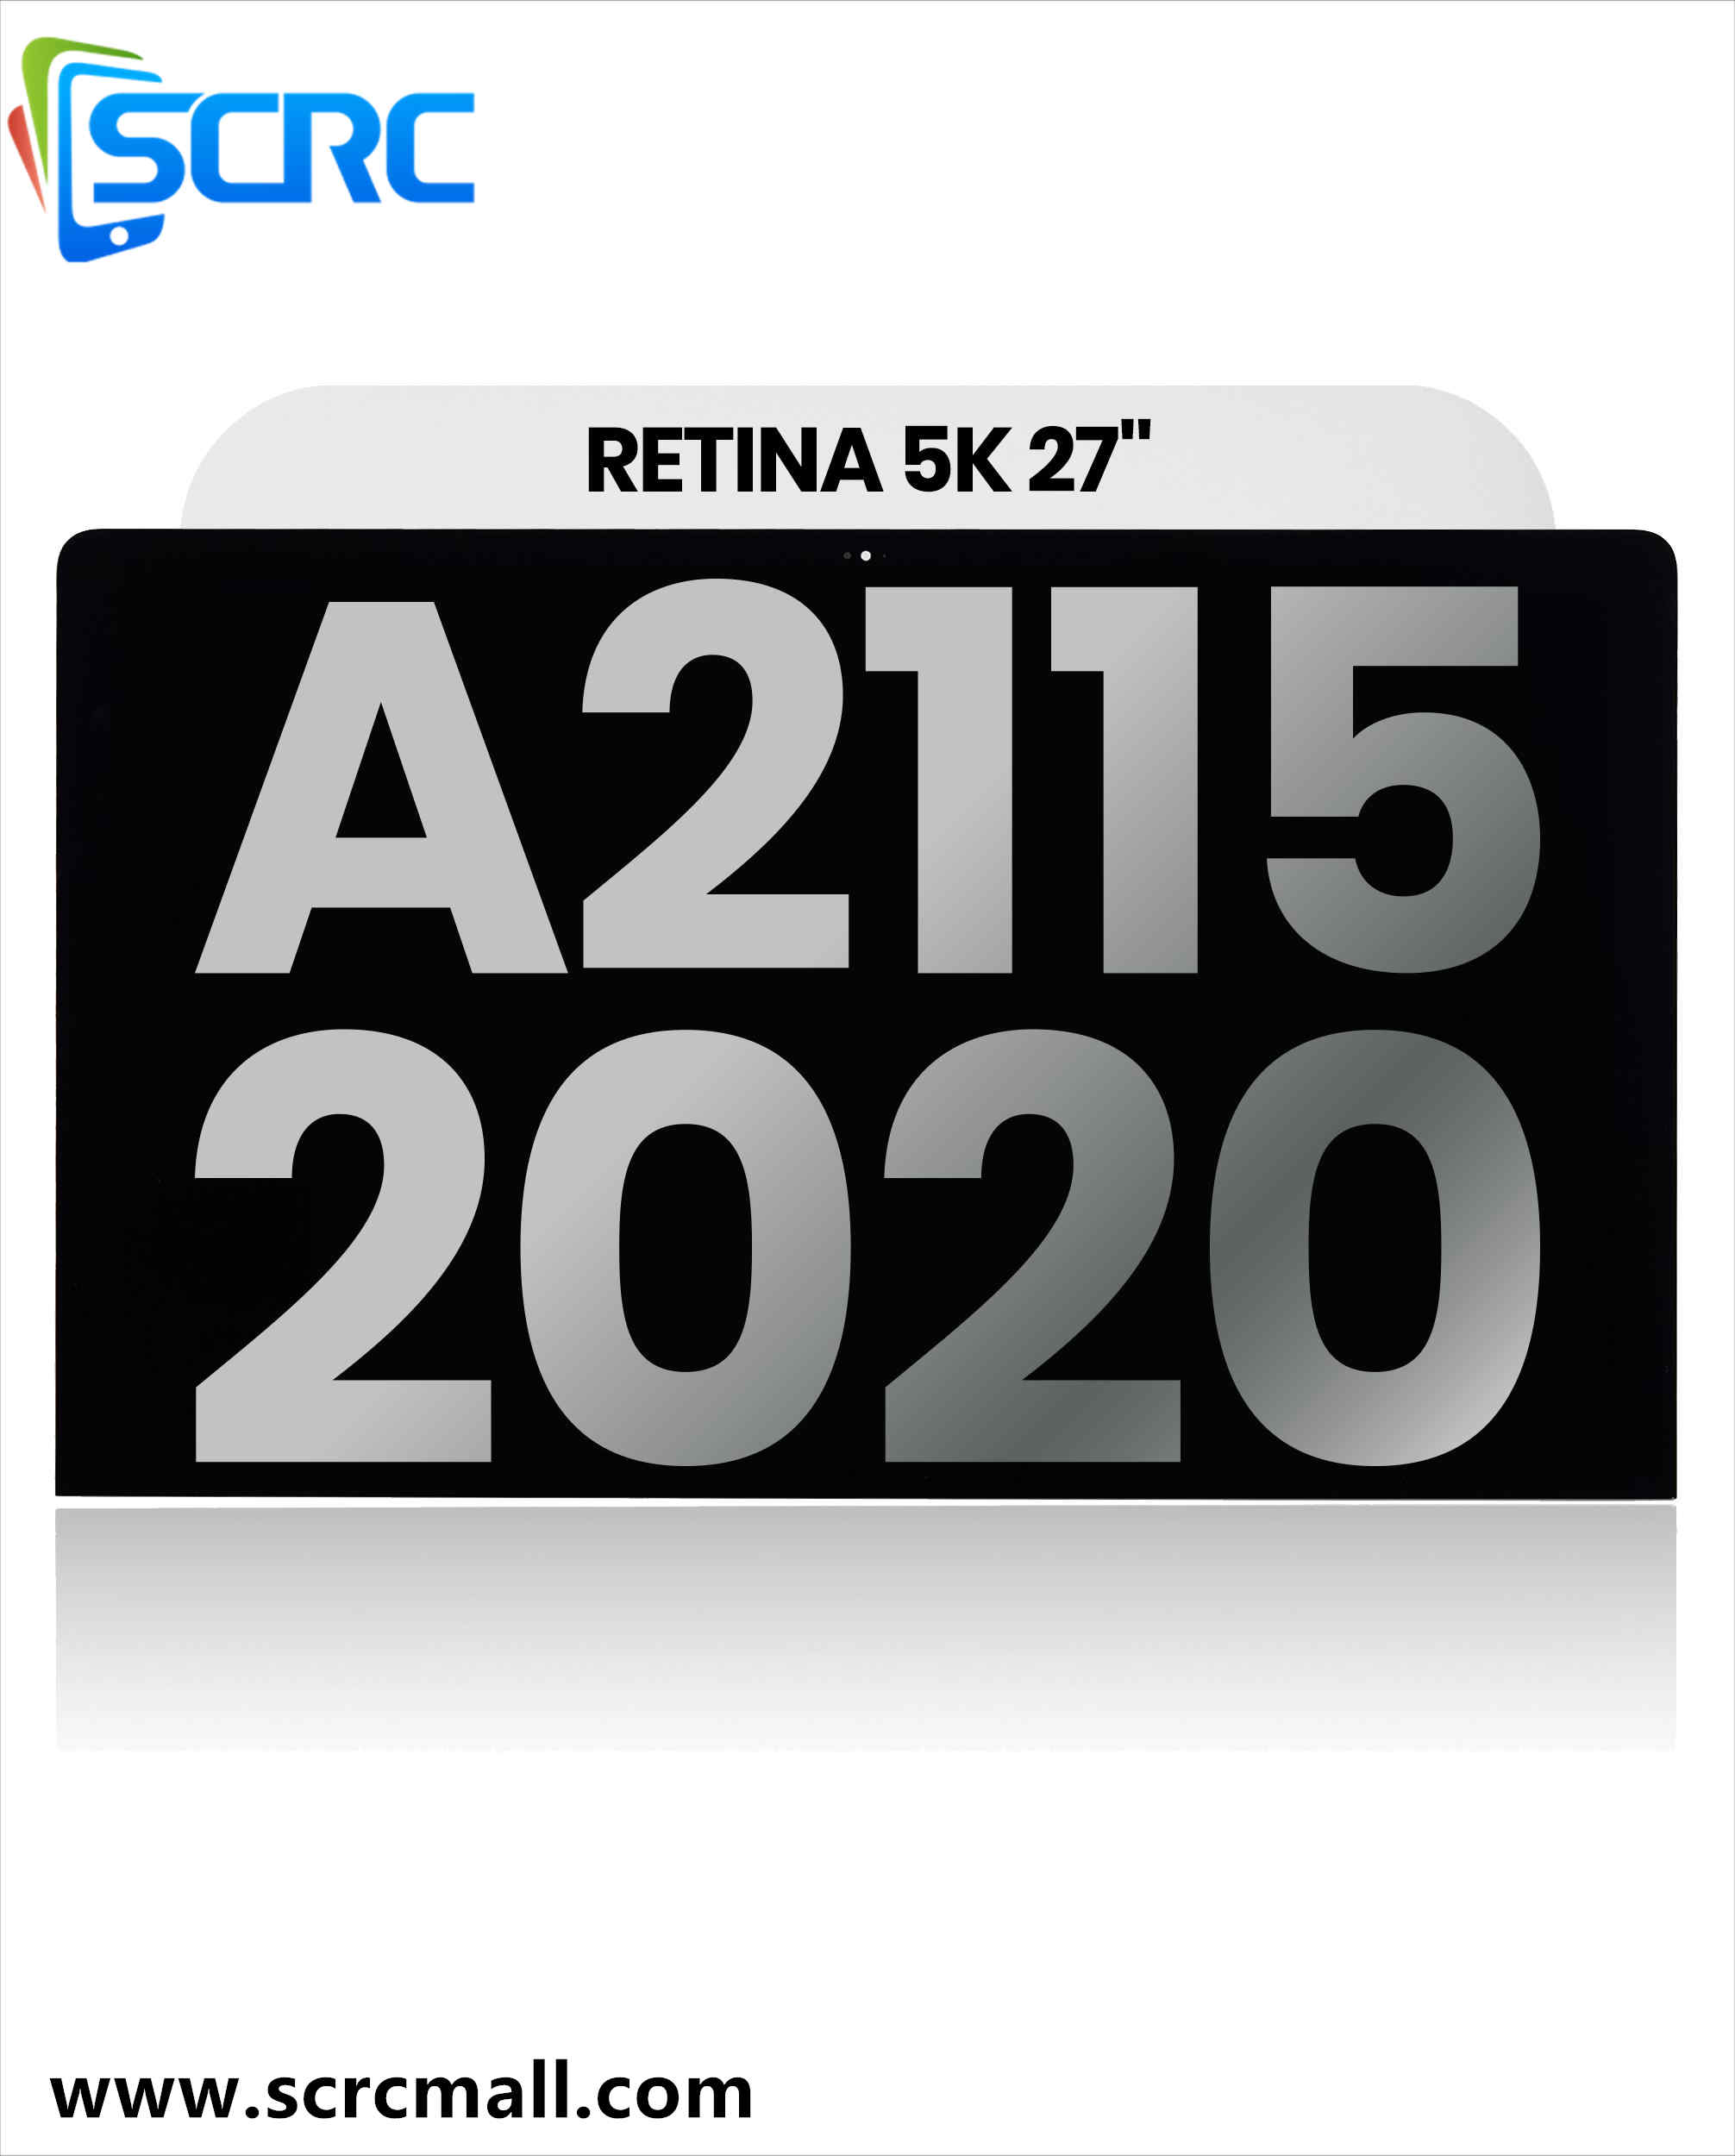 مجموعة شاشة LCD لجهاز iMac مقاس 27 بوصة Retina 5K (A2115 ، منتصف 2020)